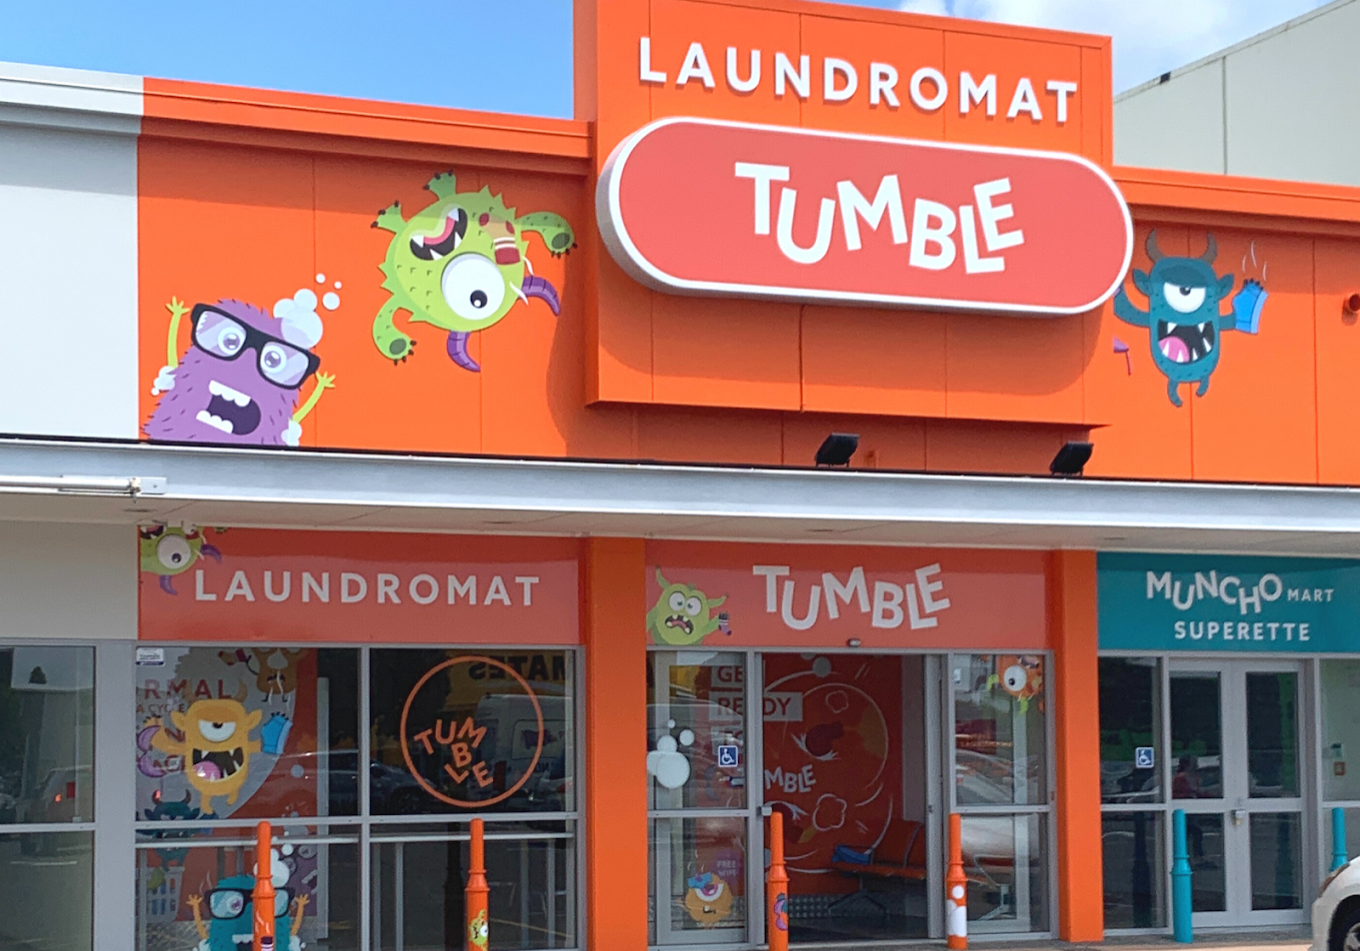 Mount Maunganui Tumble event: A fun image showing Tumble's Mount Maunganui Laundromat. Laundry in Mount Maunganui.